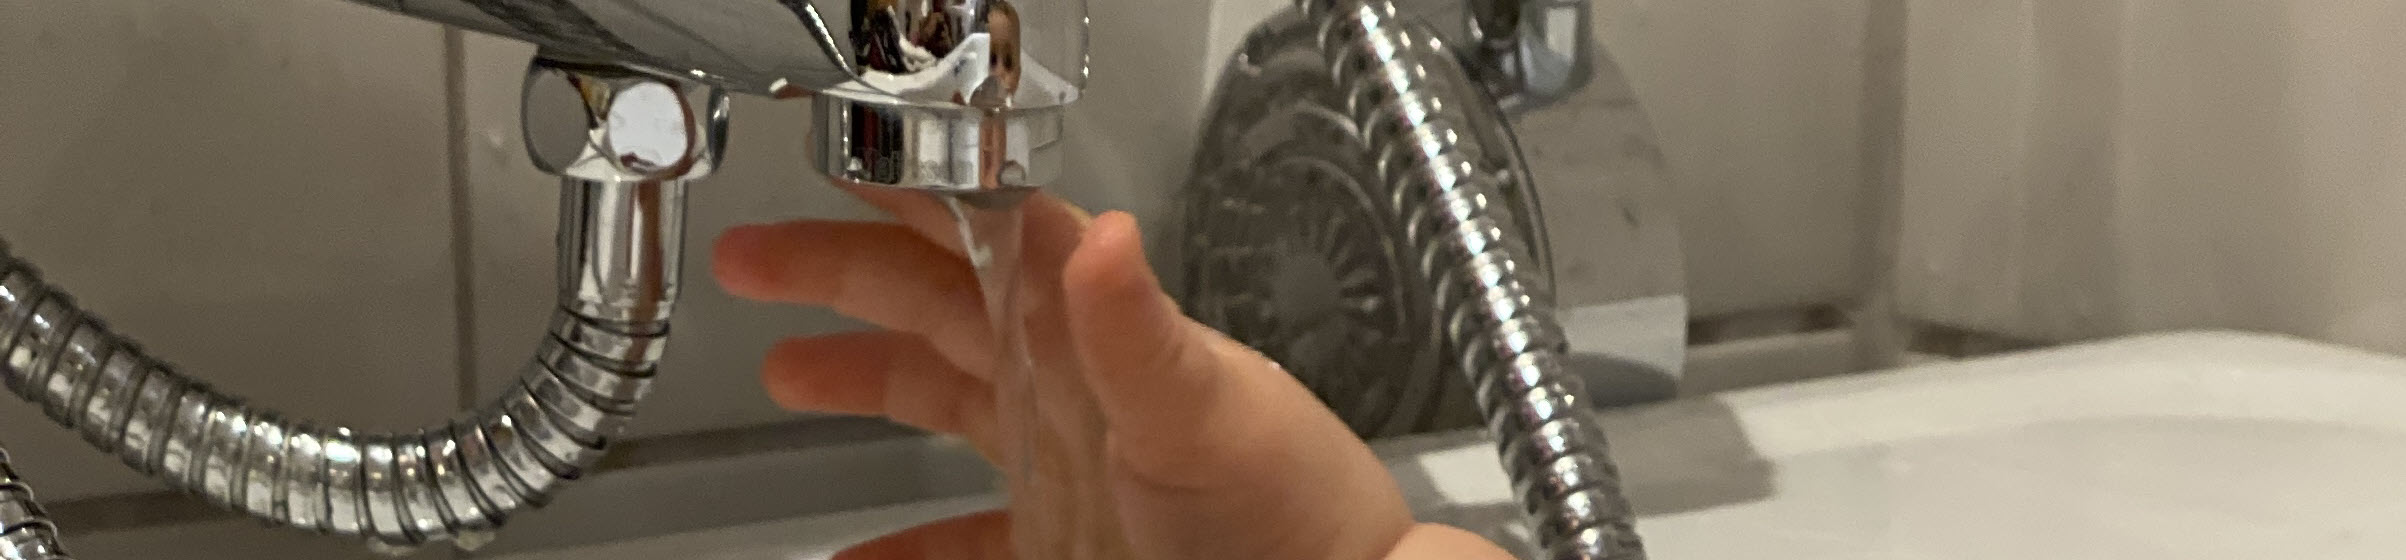 barnehånd tar på vann fra kran i badekar